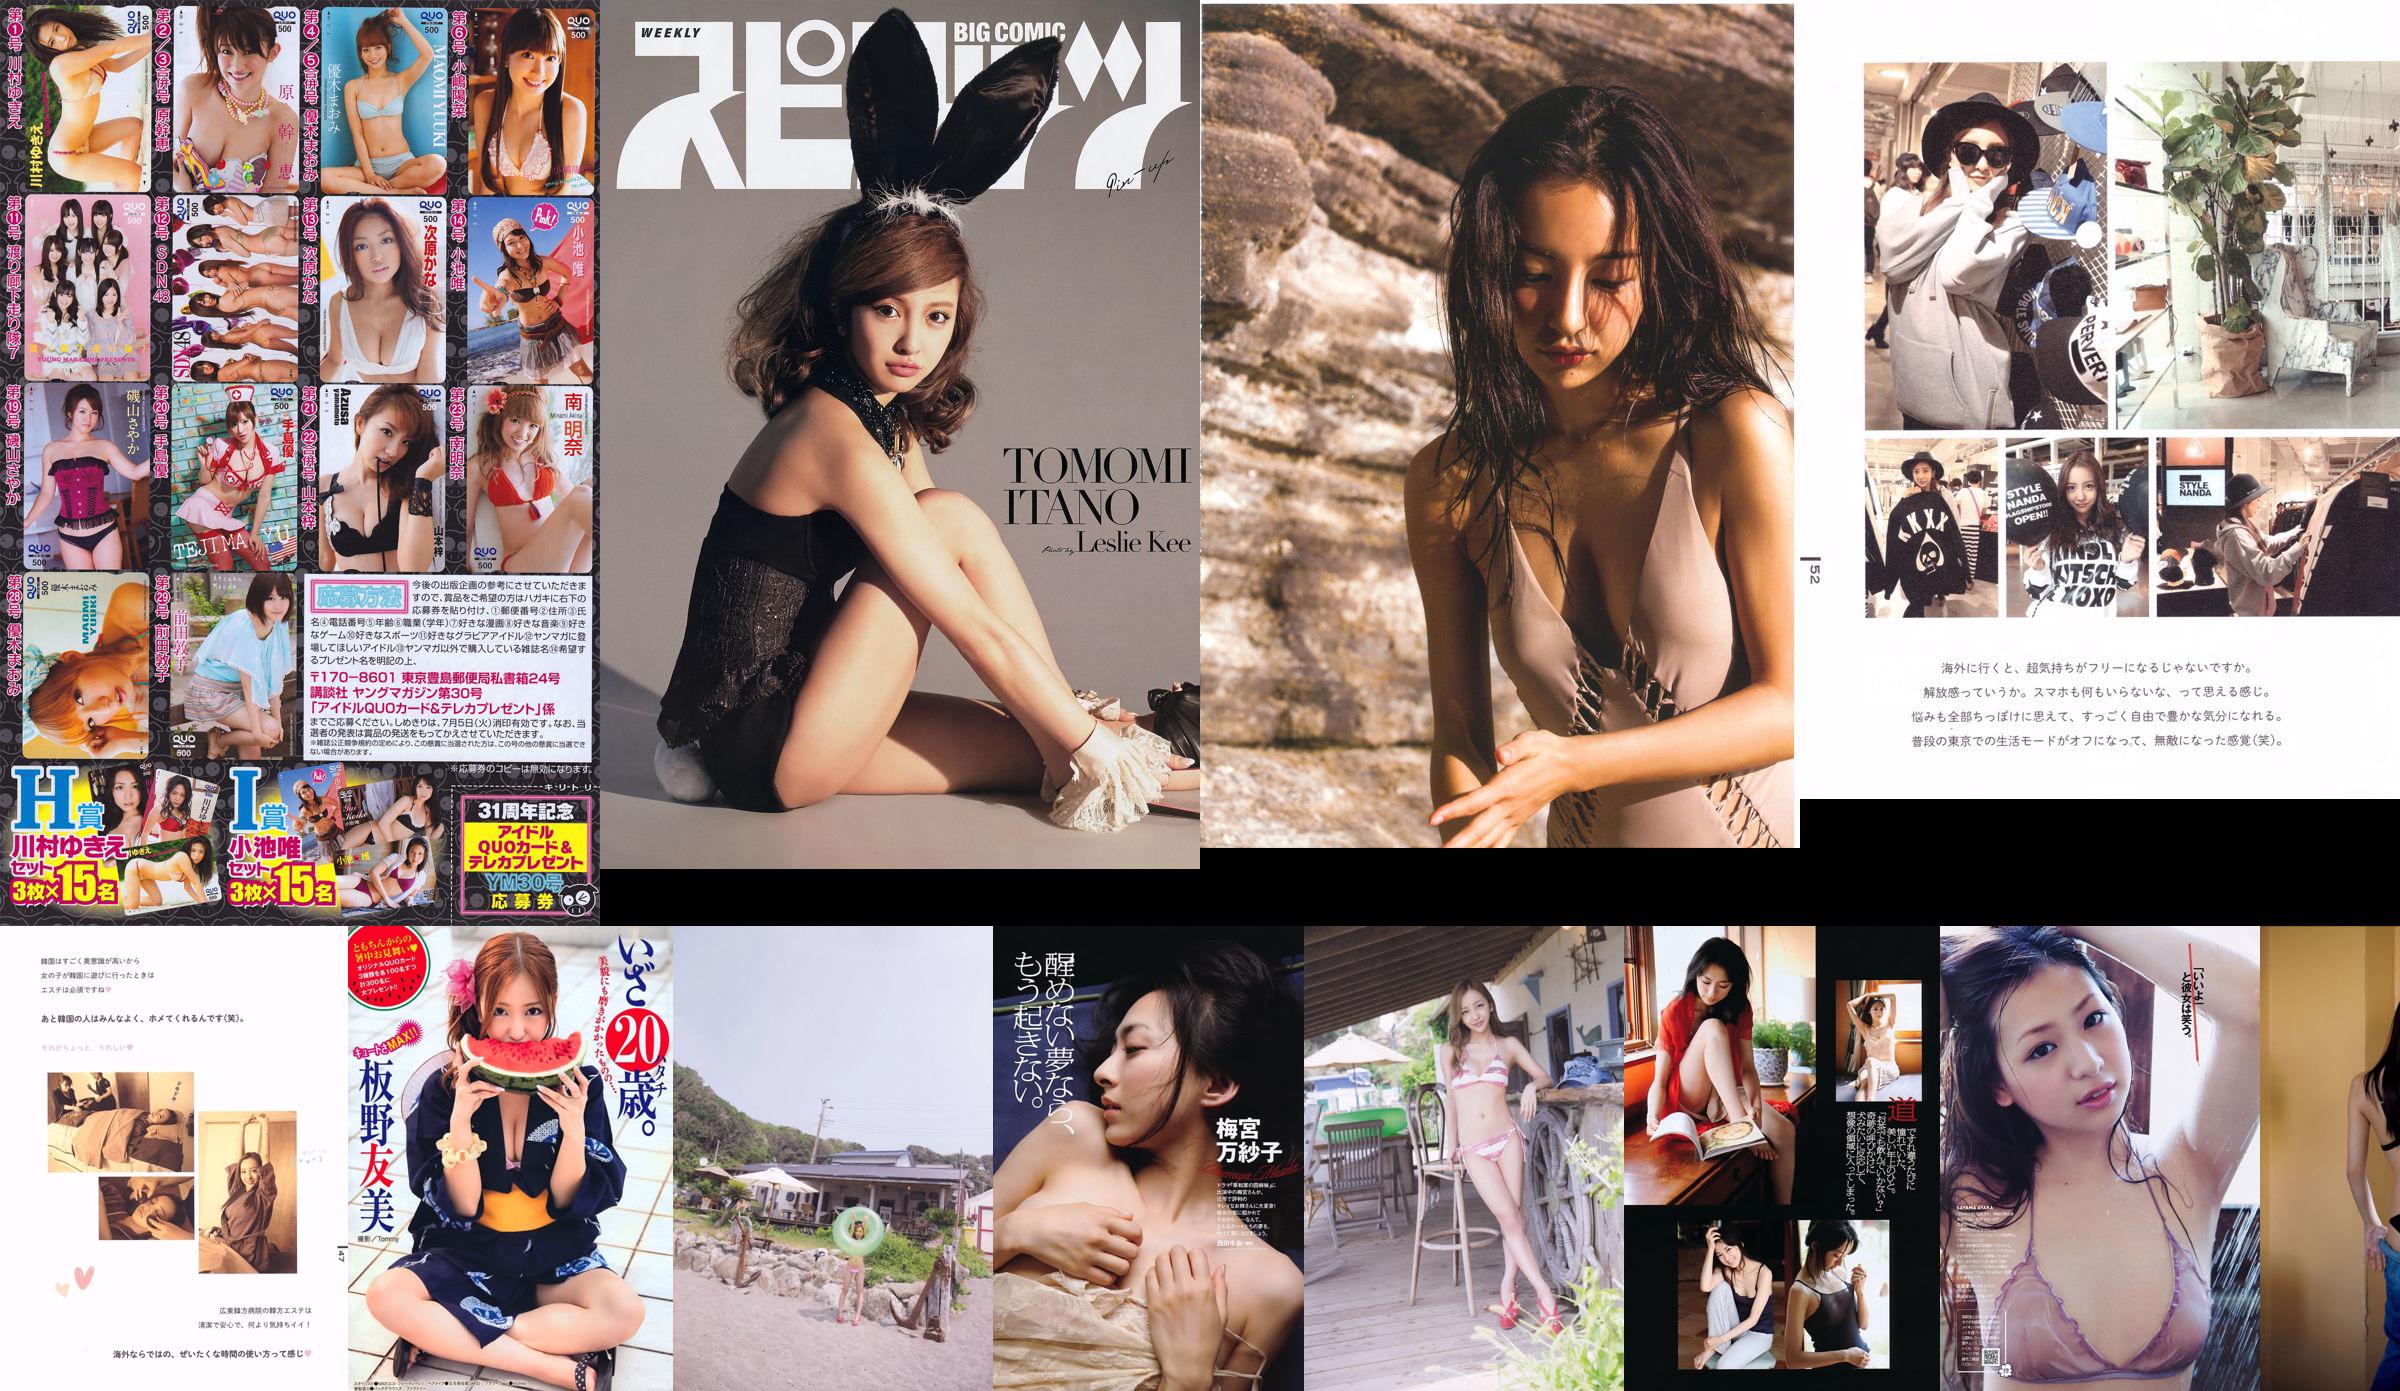 [Revista Young] Tomomi Itano SUPER ☆ GiRLS Anri Sugihara Yuu Tejima Yuzuki Aikawa 2011 Fotografia No.30 No.5118f6 Página 1